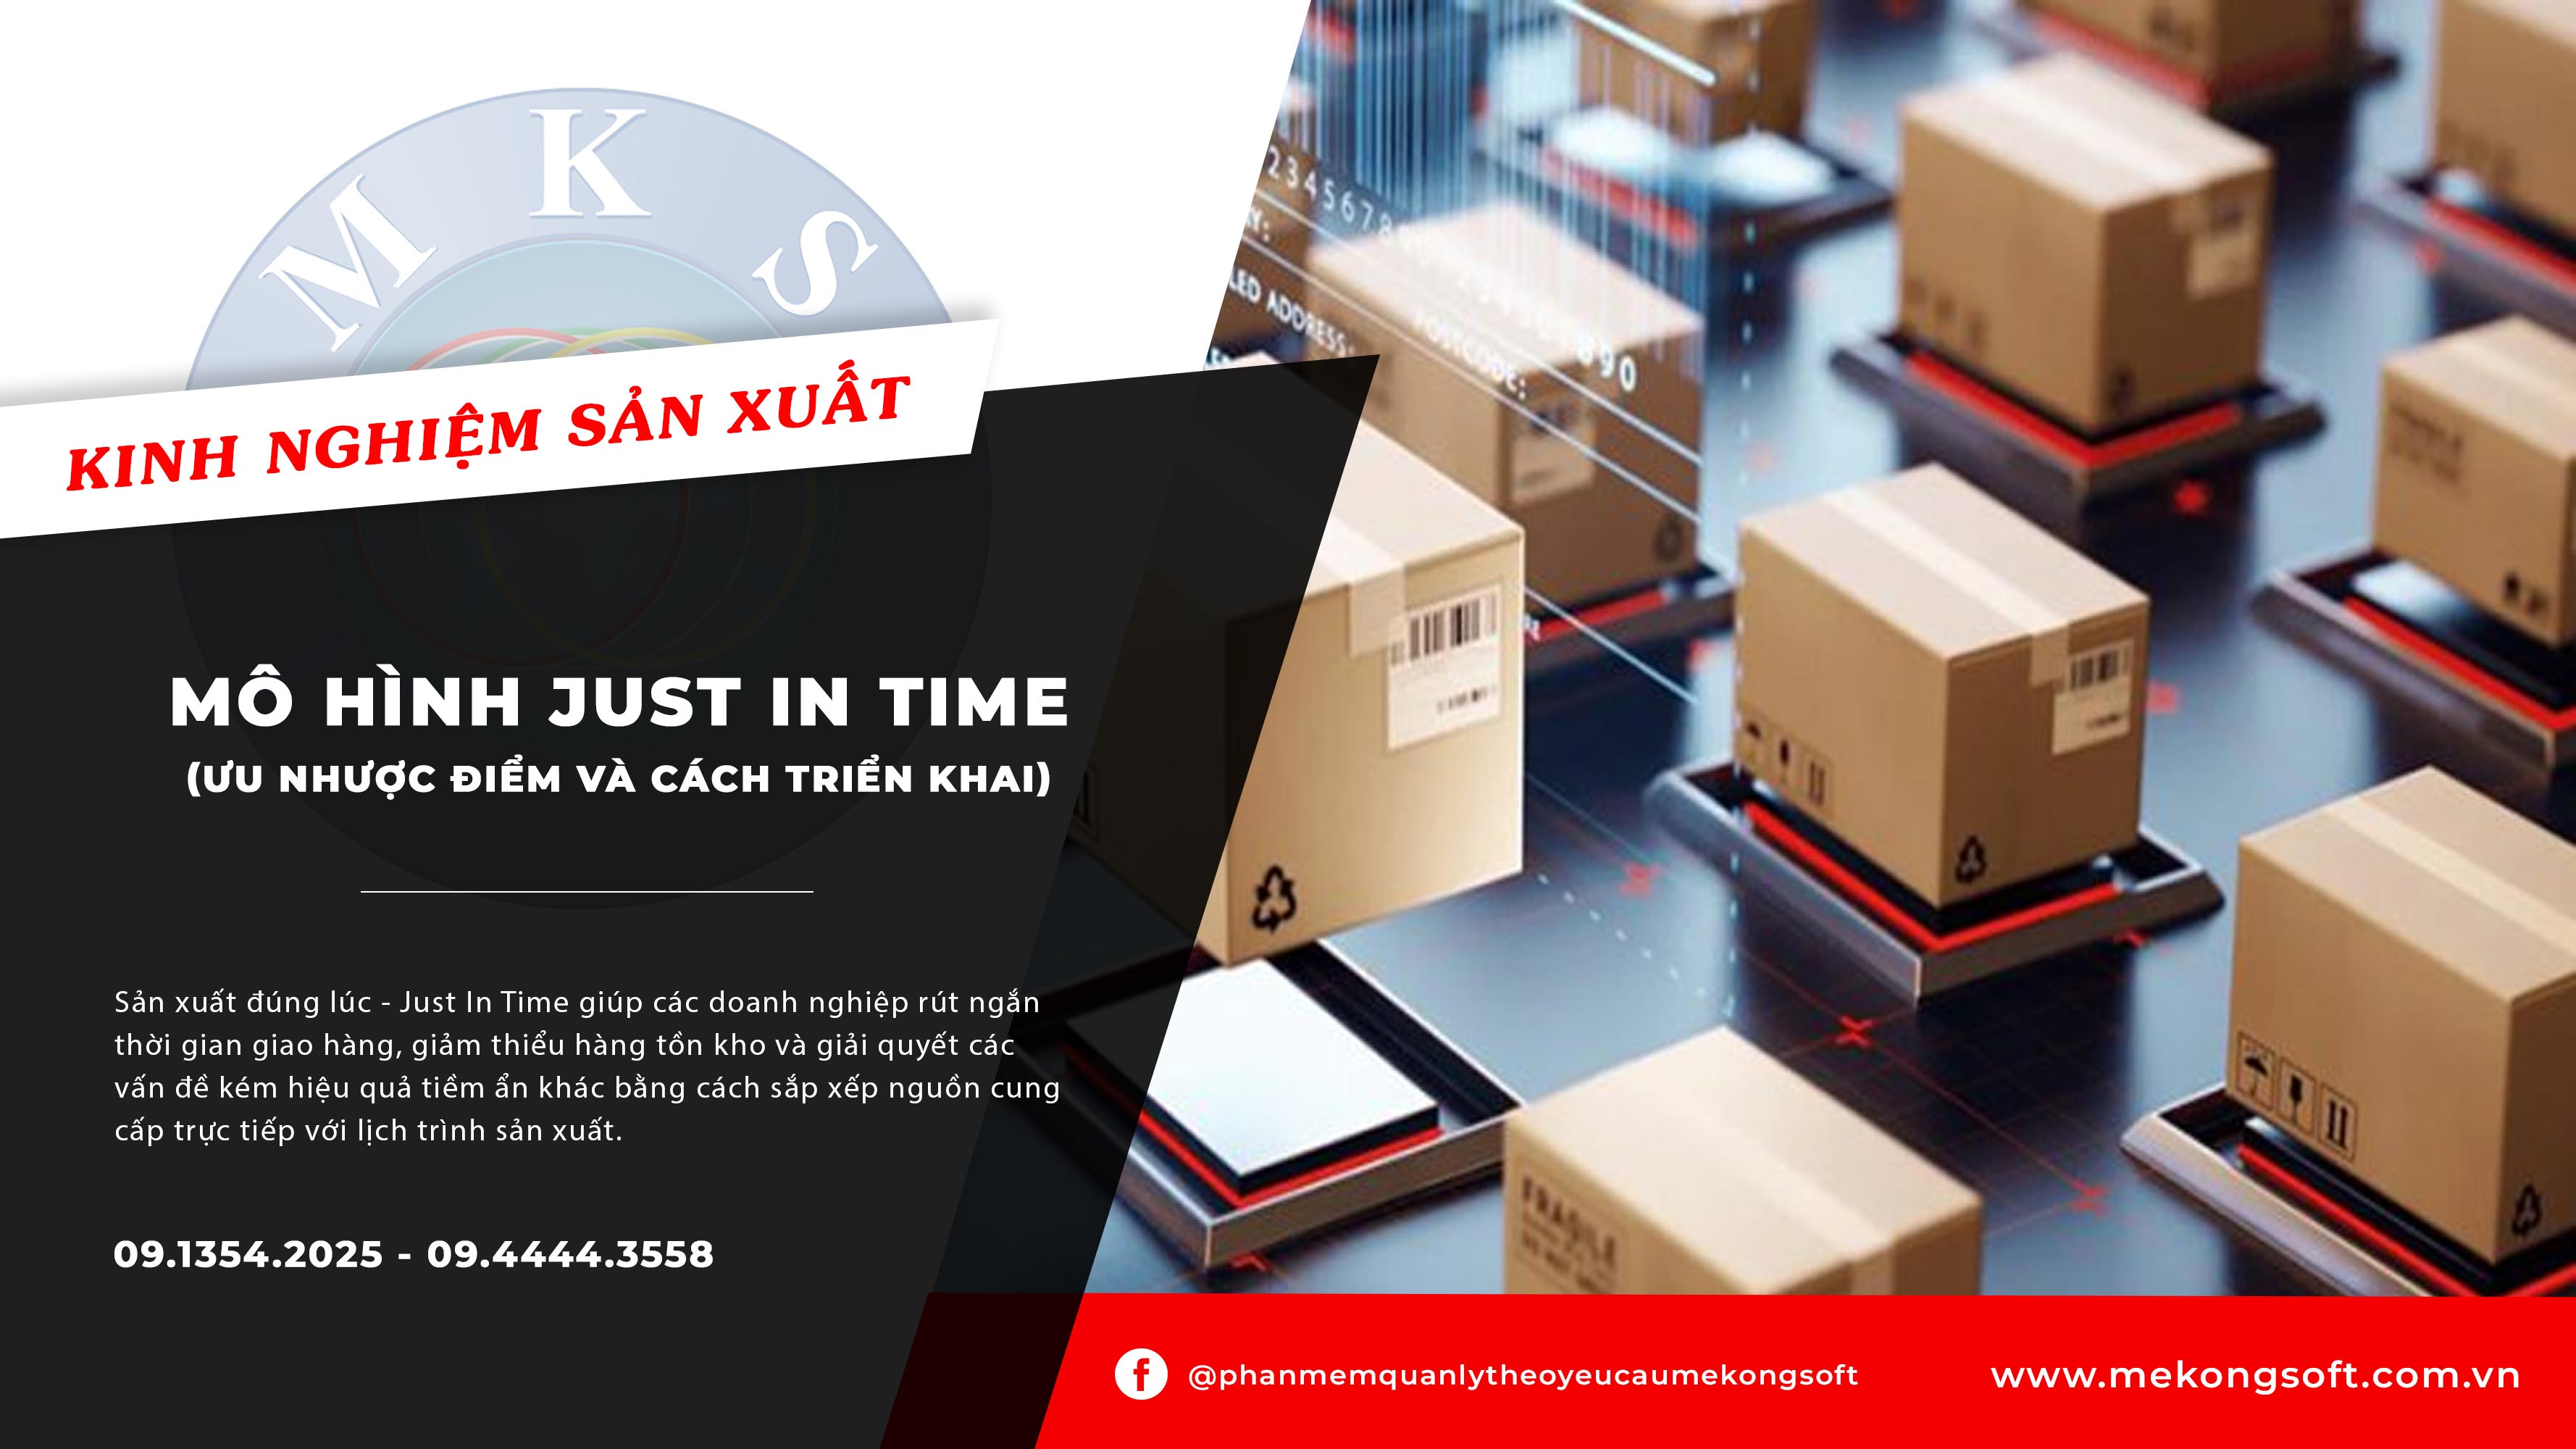 Đọc báo giùm bạn  JustInTime  Phương pháp hiện đại quản lý hàng tồn kho   Diễn đàn xuất nhập khẩu và logistics lớn nhất Việt Nam